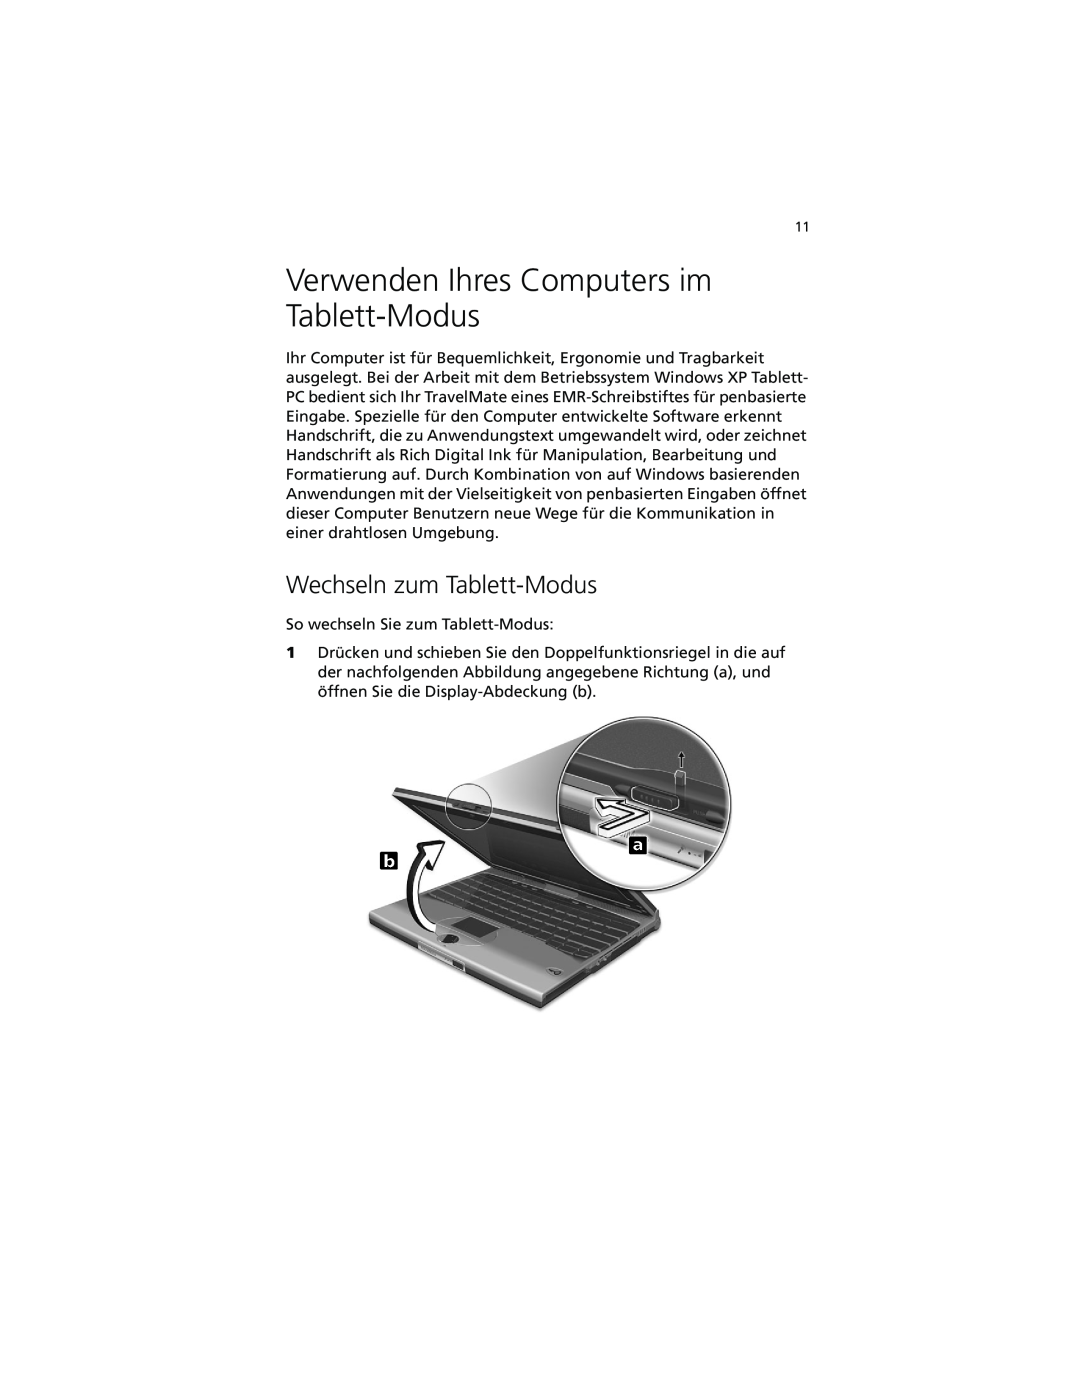 Acer C100-Series manual Verwenden Ihres Computers im Tablett-Modus, Wechseln zum Tablett-Modus 